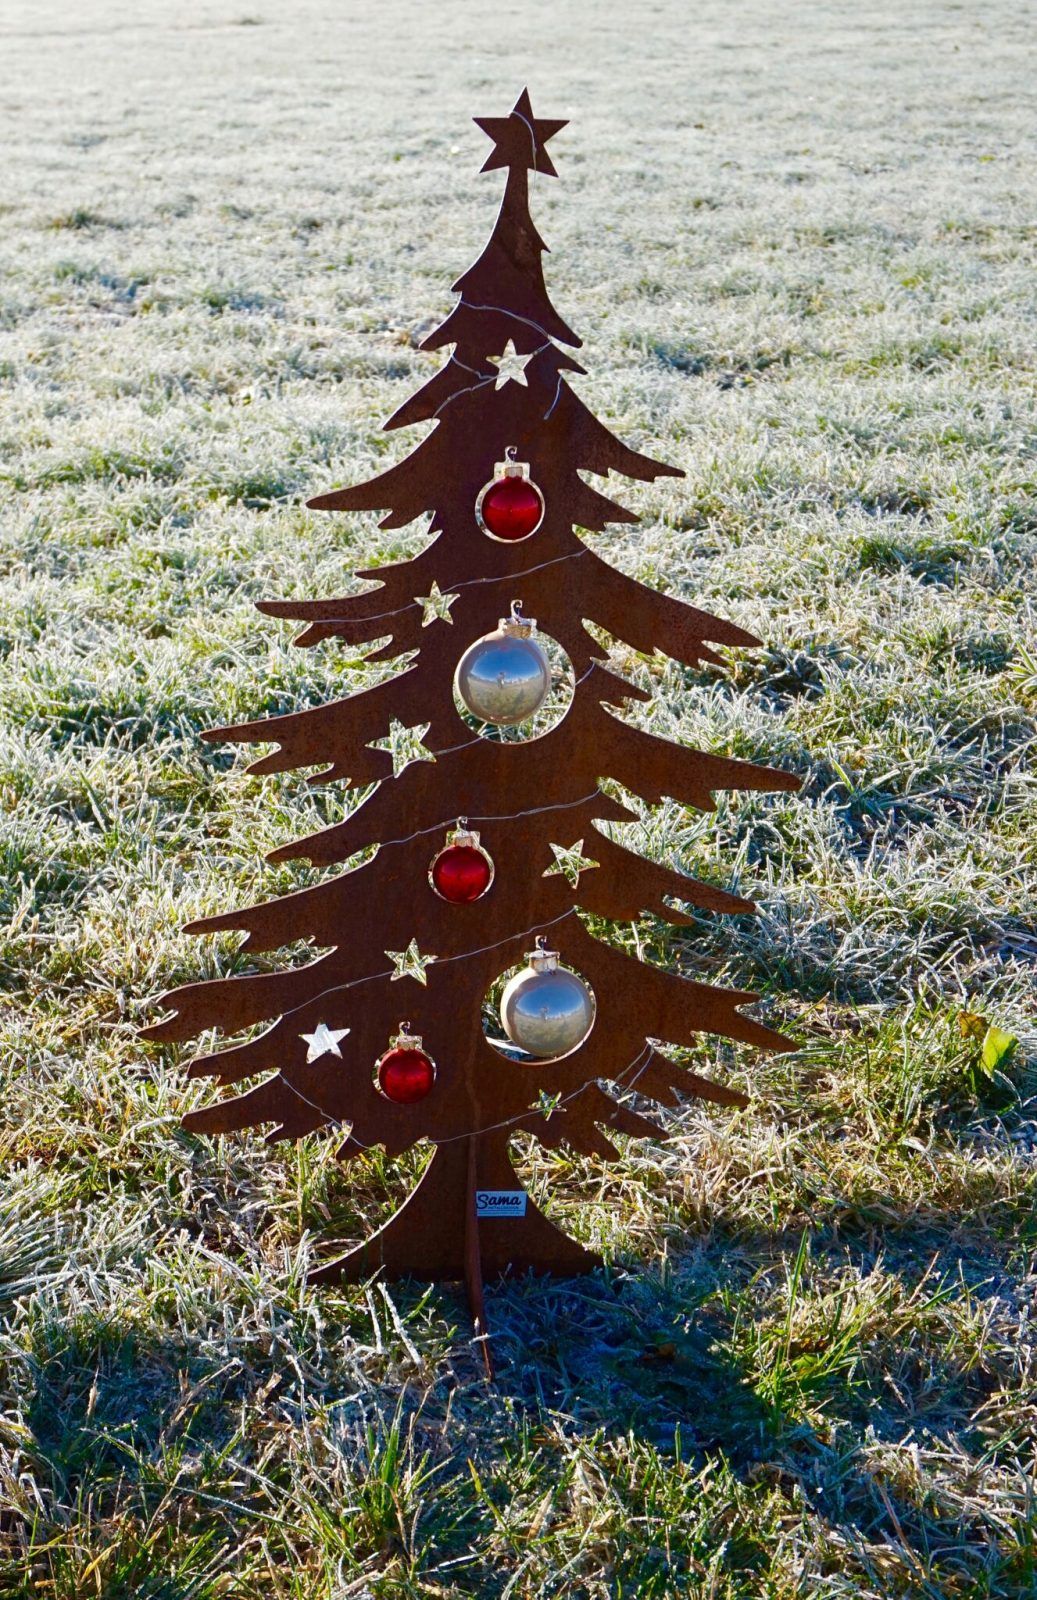 Gartendeko Schnecke Best Of Weihnachtsbaum In Rostoptik Absolut Stabil In Deutschland